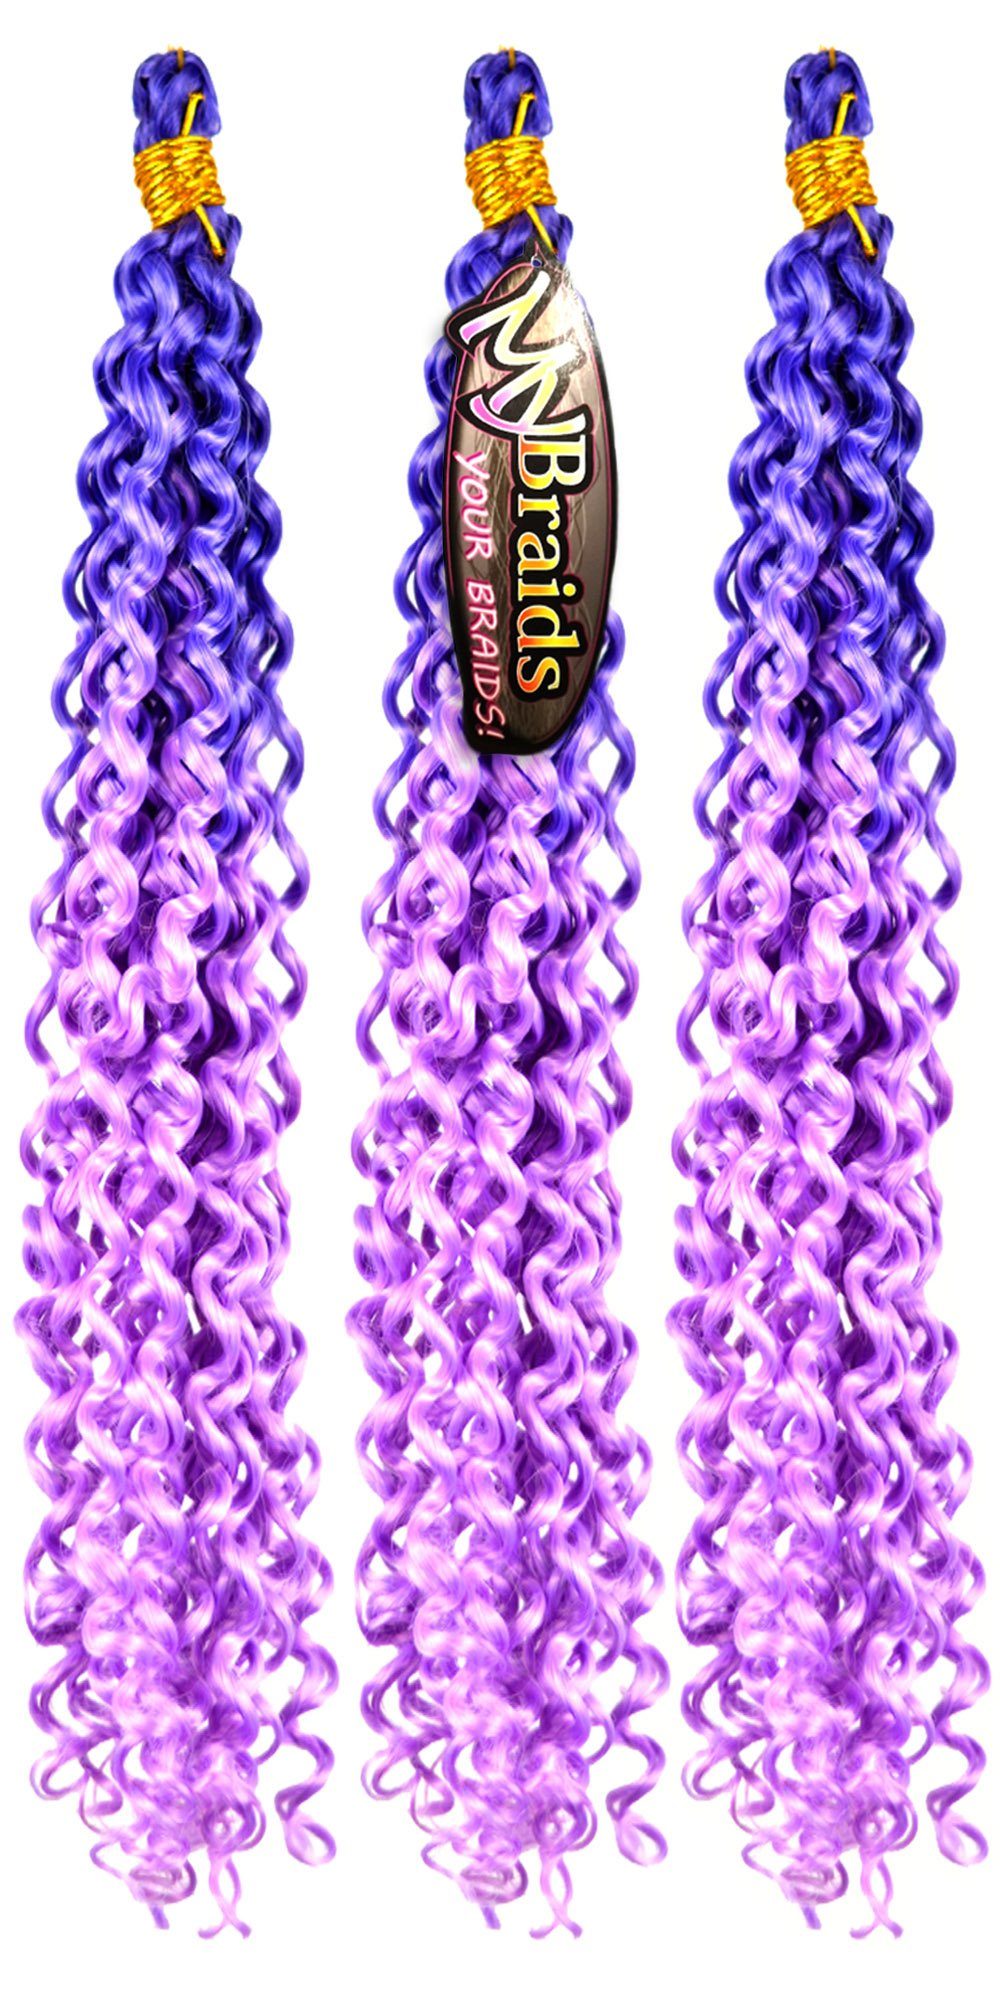 MyBraids YOUR Ombre Flechthaar Braids Deep Crochet BRAIDS! 21-WS 3er Wave Pack Kunsthaar-Extension Blauviolett-Hellviolett Zöpfe Wellig